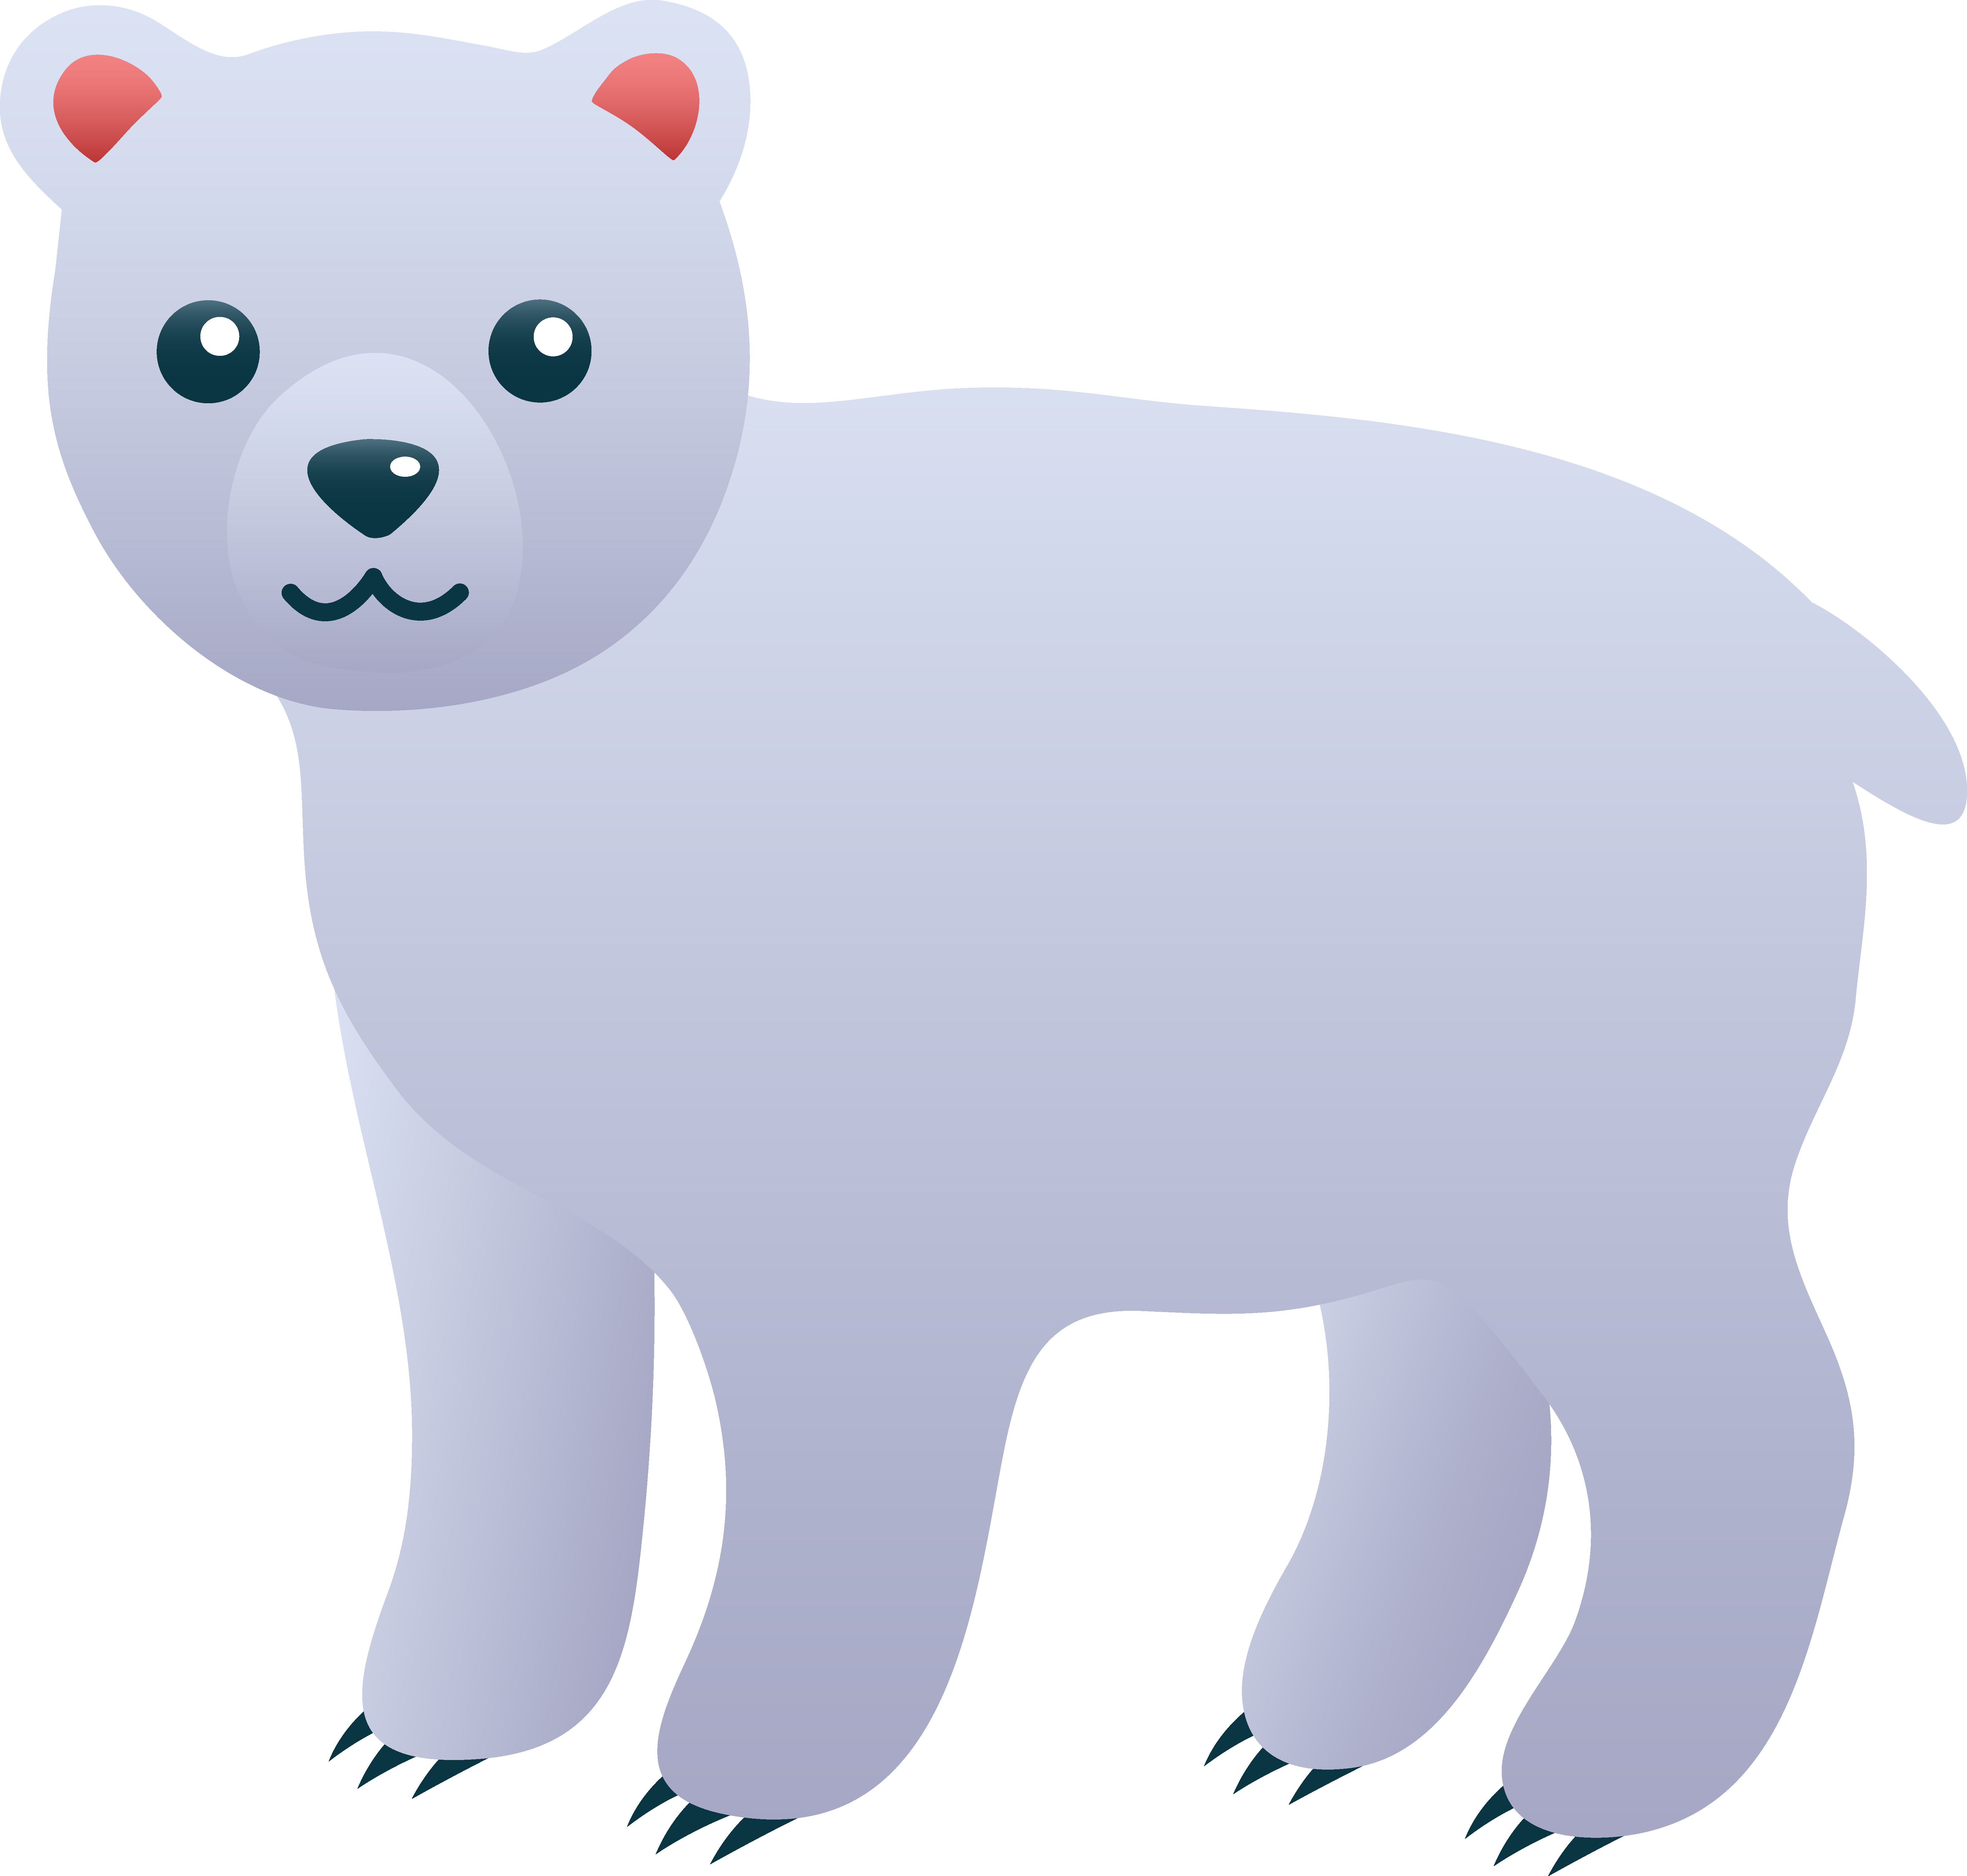 A cute polar bear appeared - 9GAG